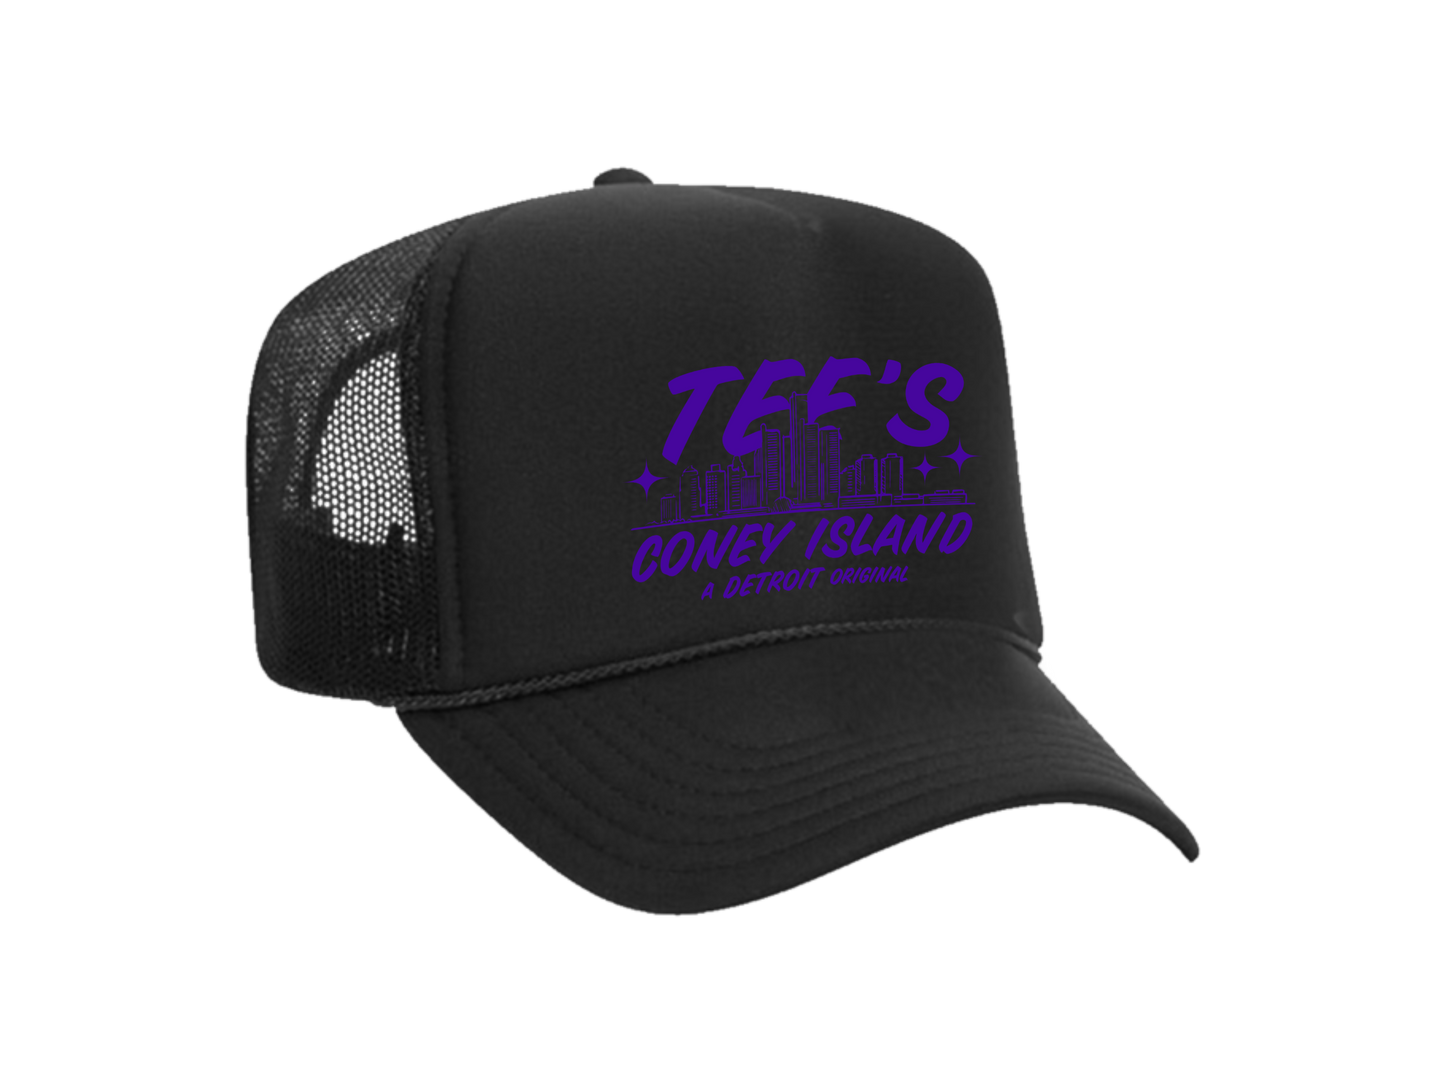 Coney Island Foam Trucker Hat